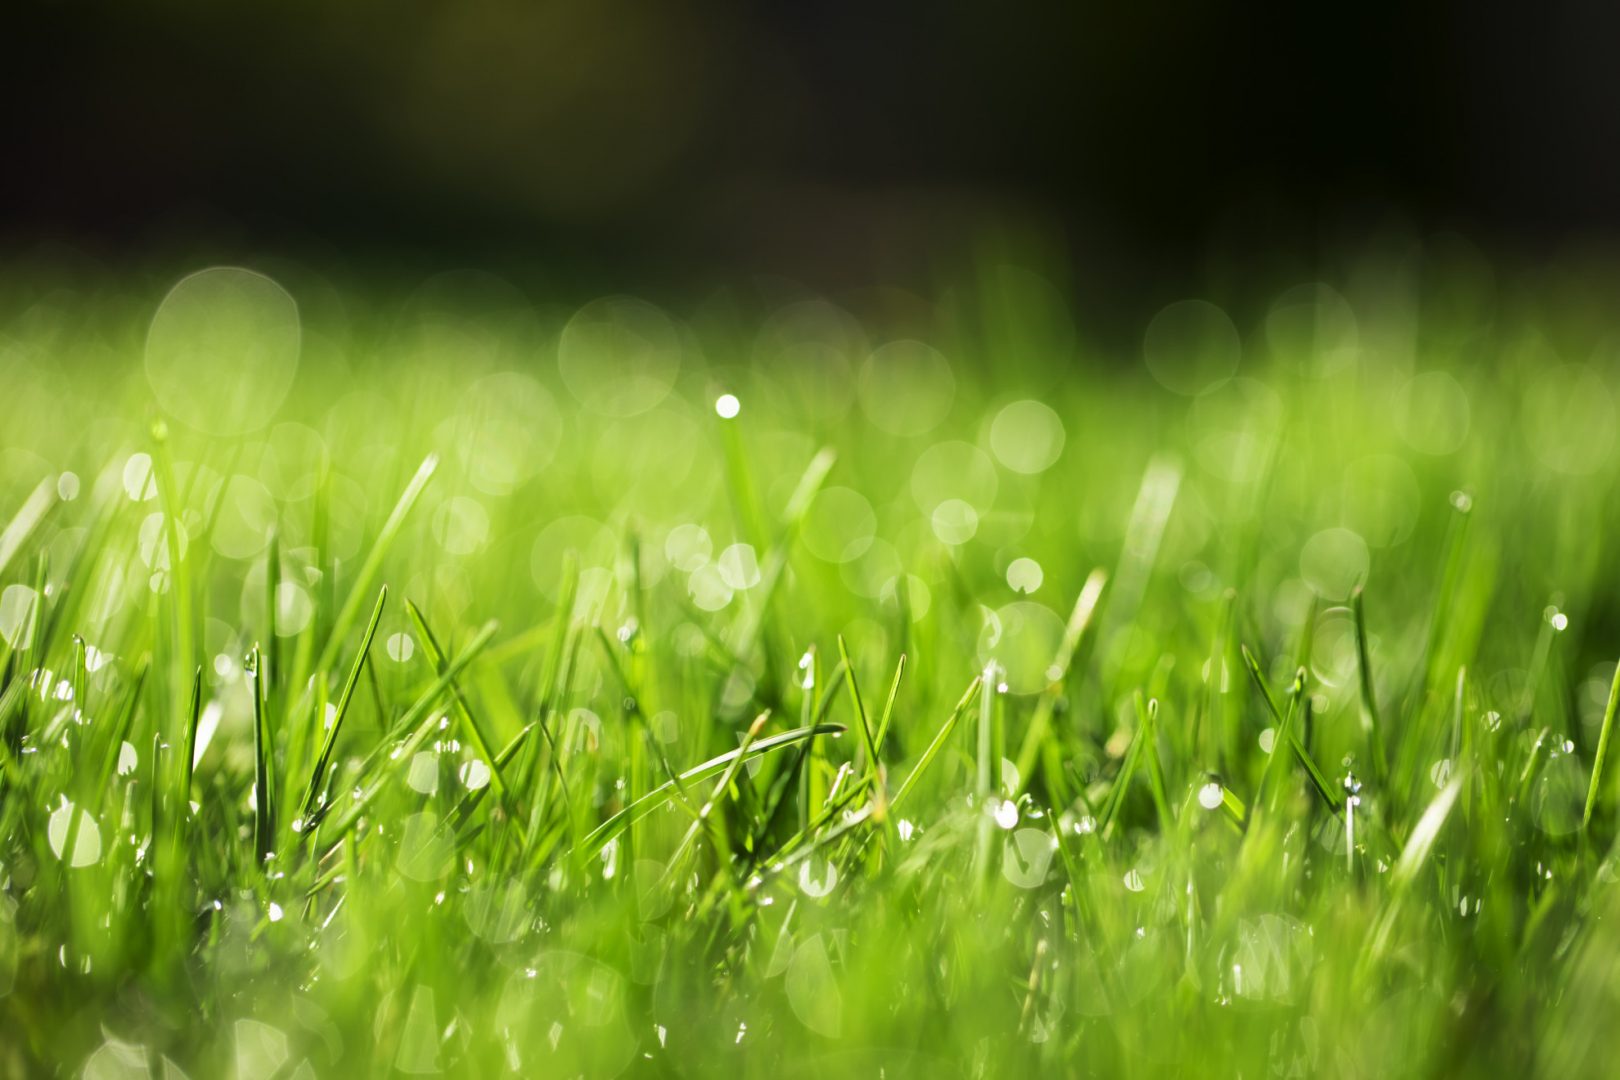 Pelouse. Remonter. Ravigoter. Ceci permettra à votre pelouse de mieux retenir l’humidité, de résister aux parasites et même de ralentir sa croissance.